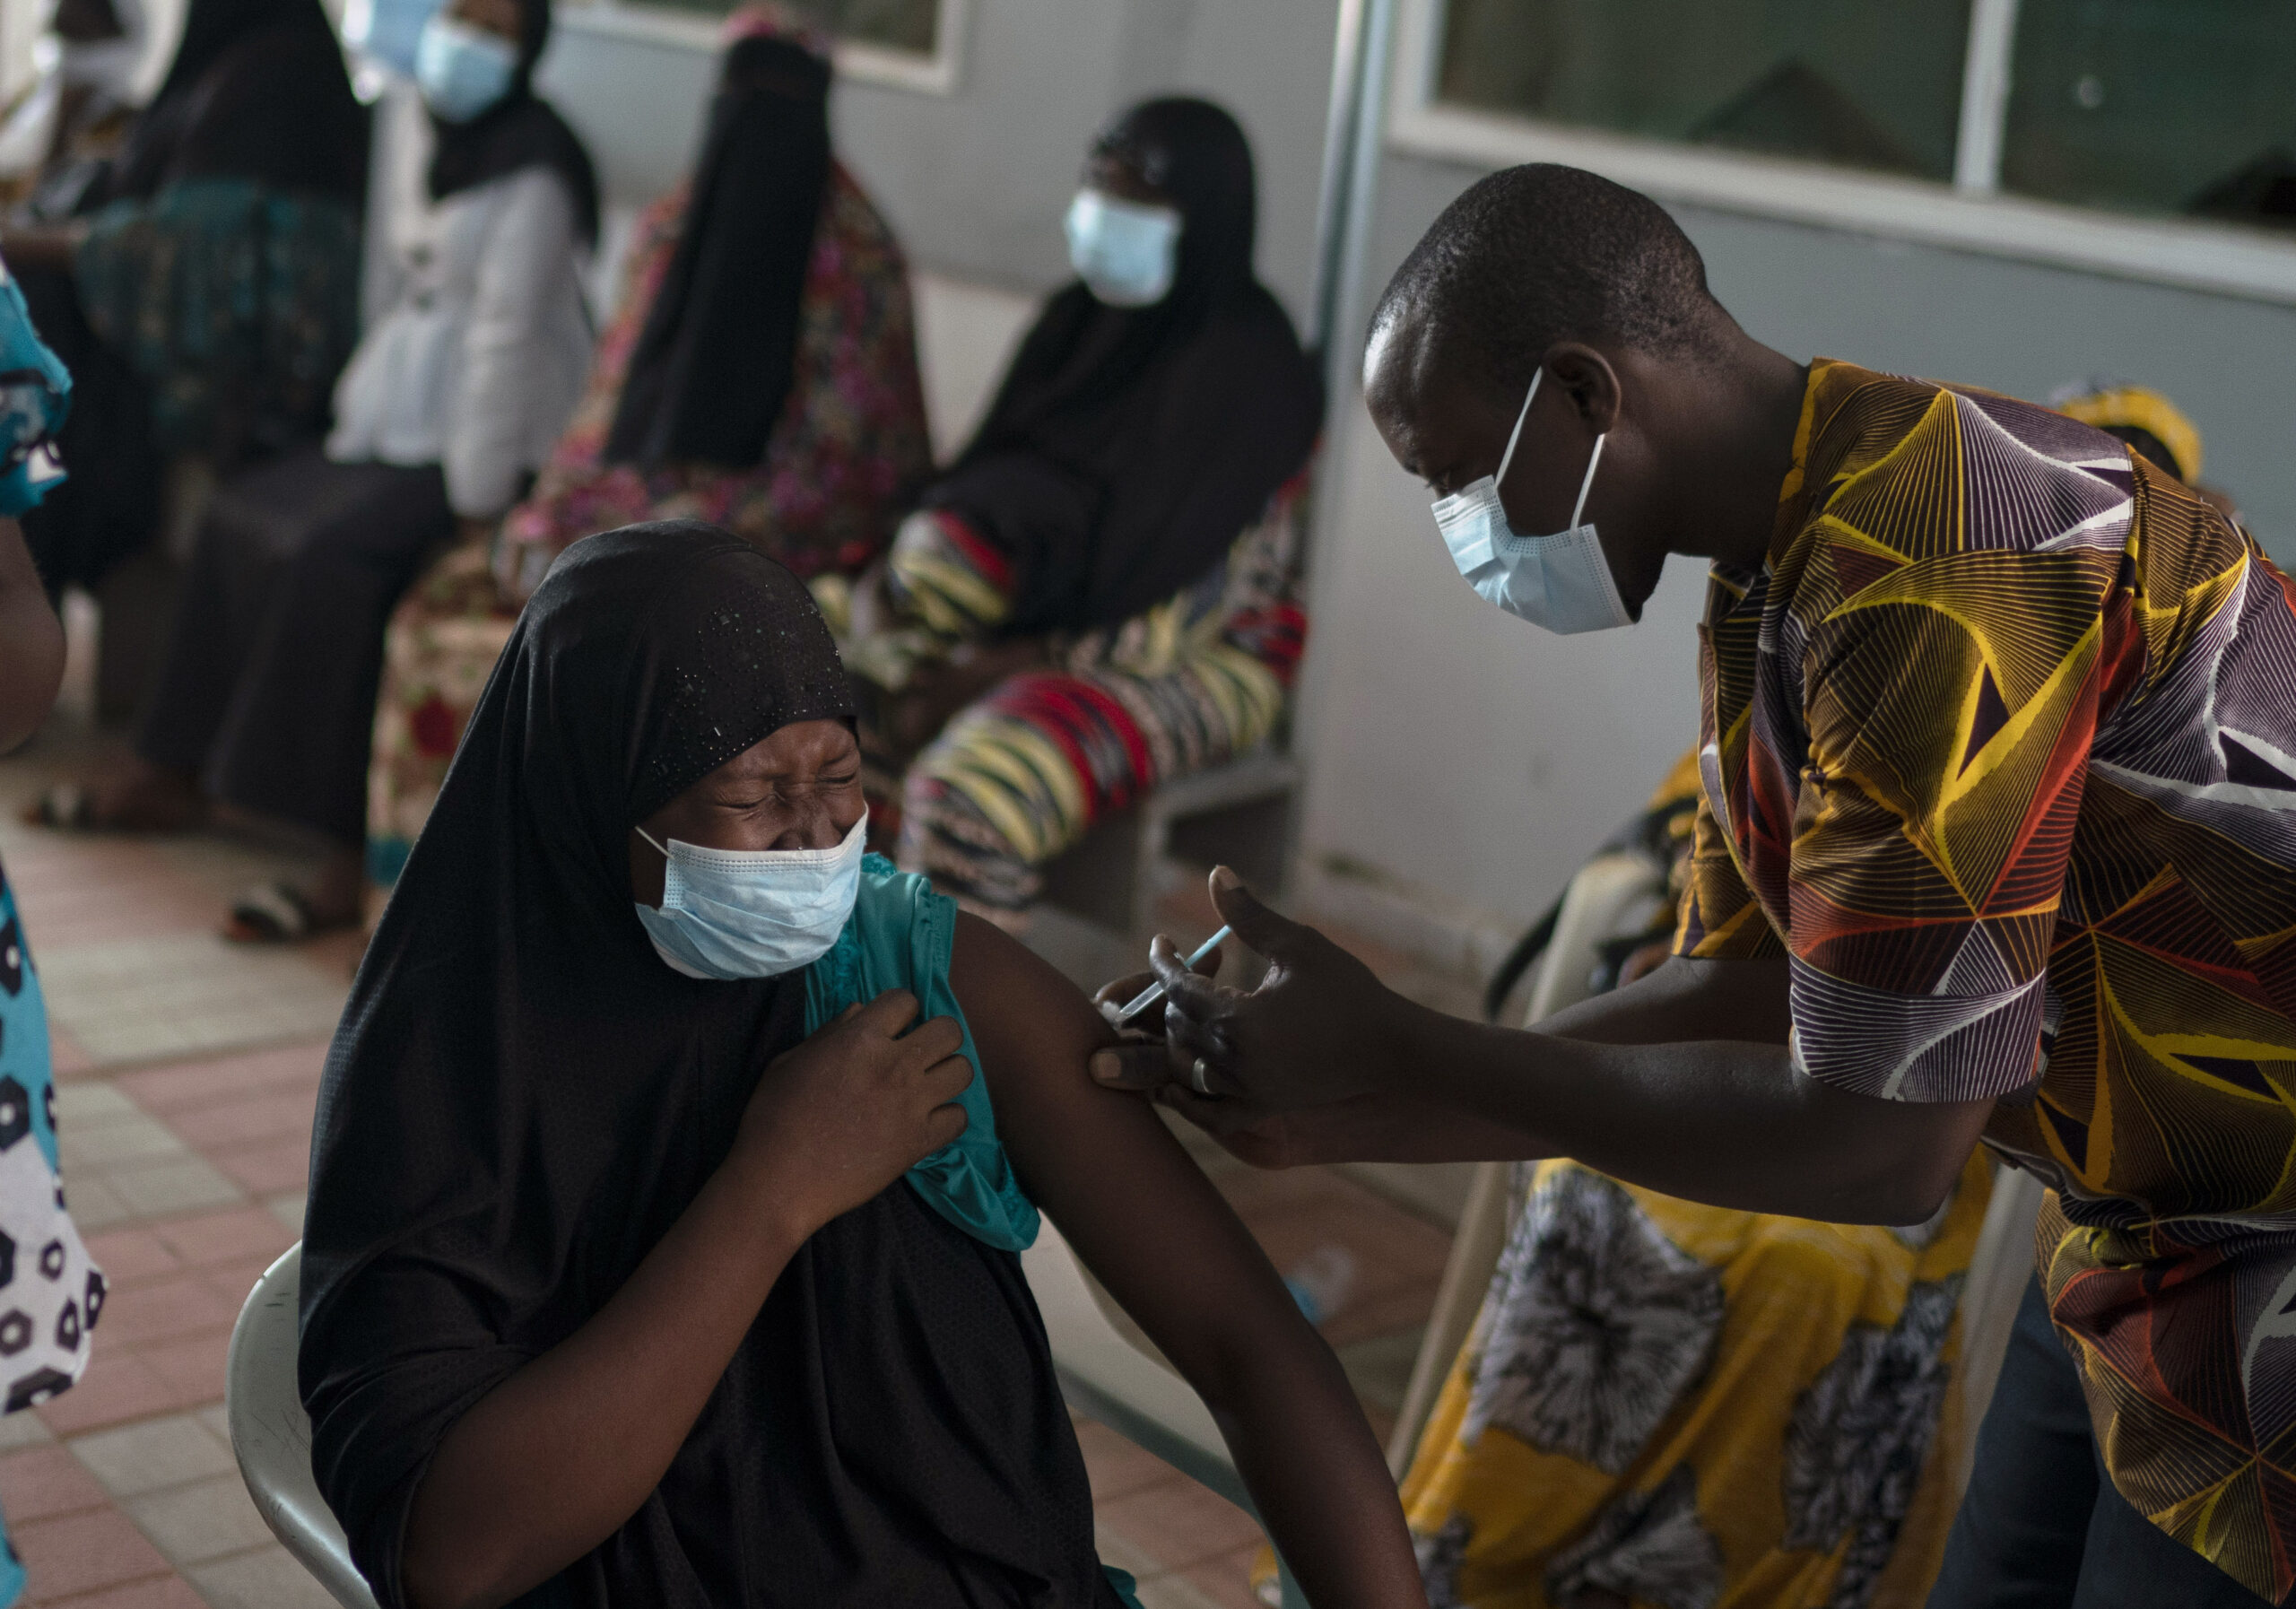 WHO เตือนโควิดอาจยาวถึงปีหน้า ชี้ยังมี “ประเทศยากจน” ไม่ได้วัคซีน – ต่างประเทศ